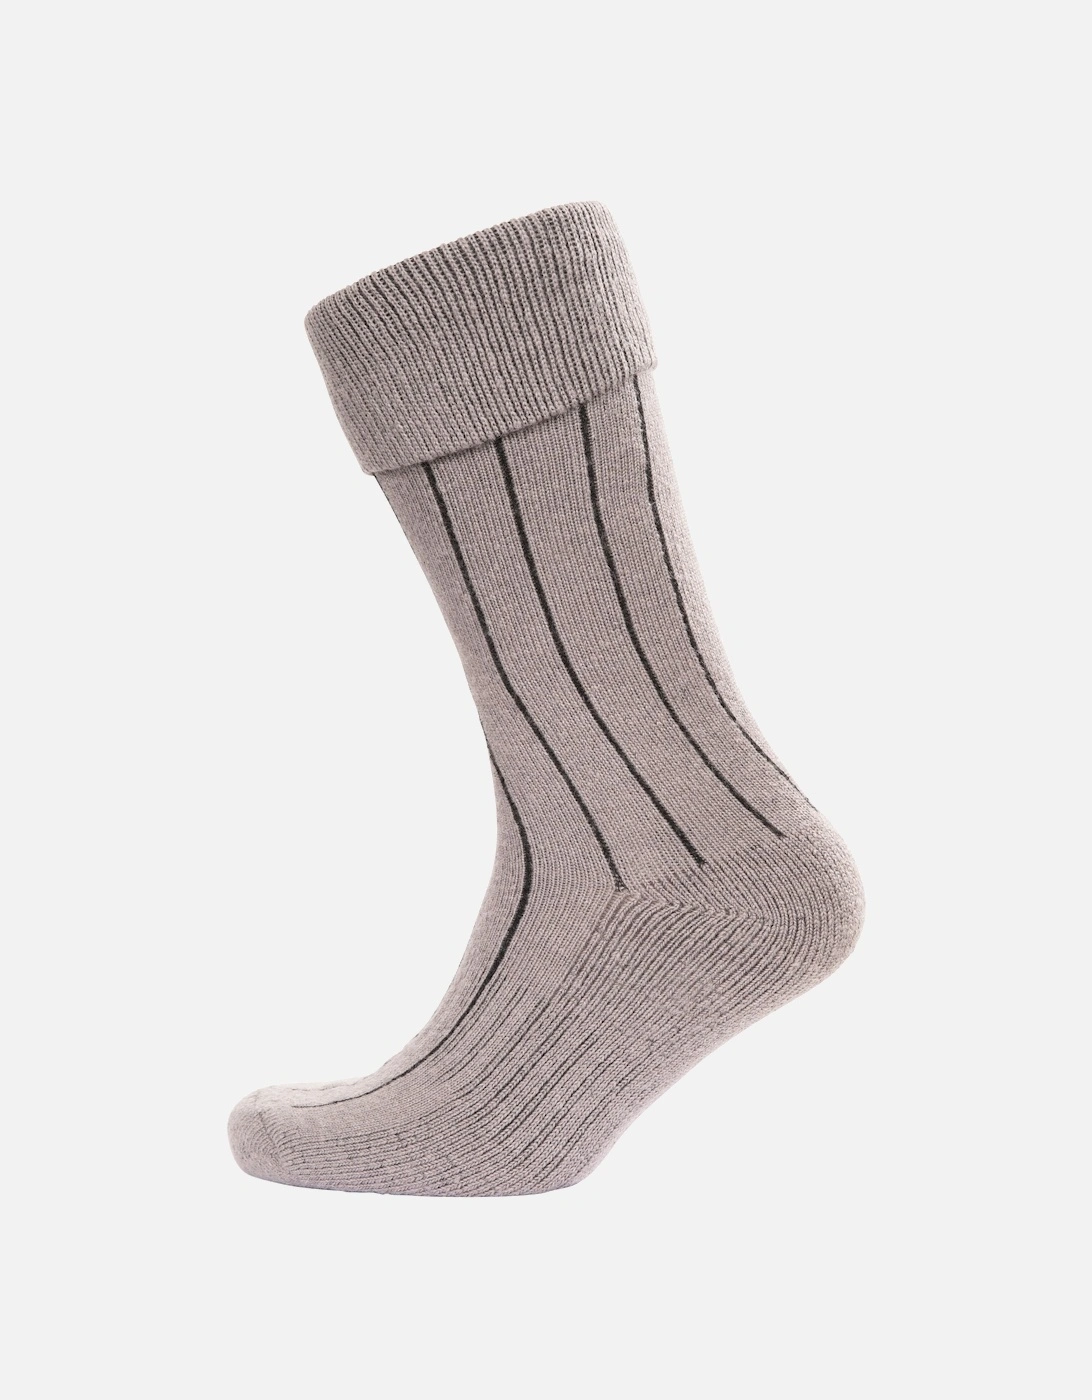 Unisex Adult Aroama Boot Socks